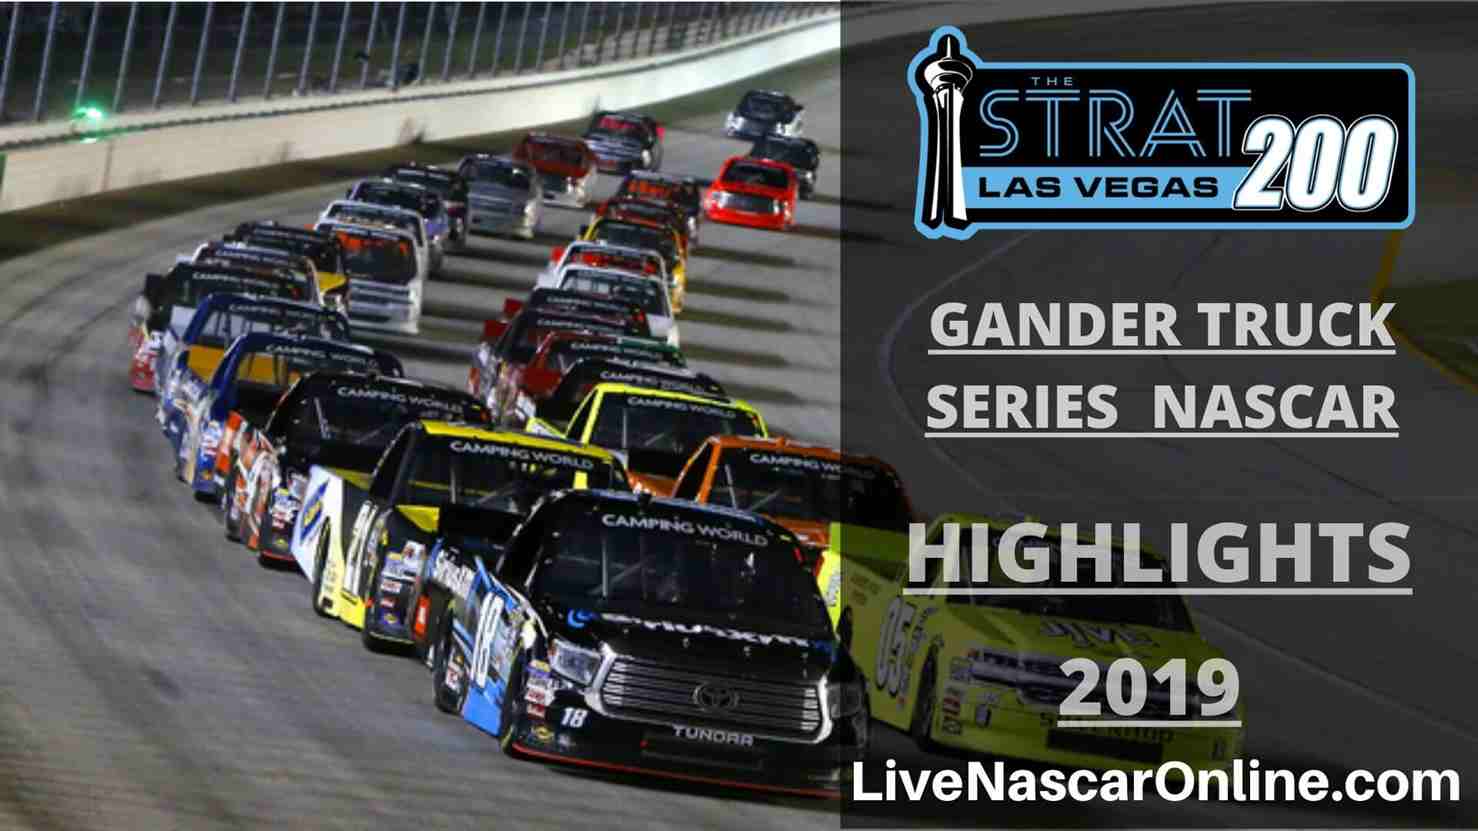 NASCAR GANDER TRUCK SERIES HIGHLIGHTS 2019 STRAT 200